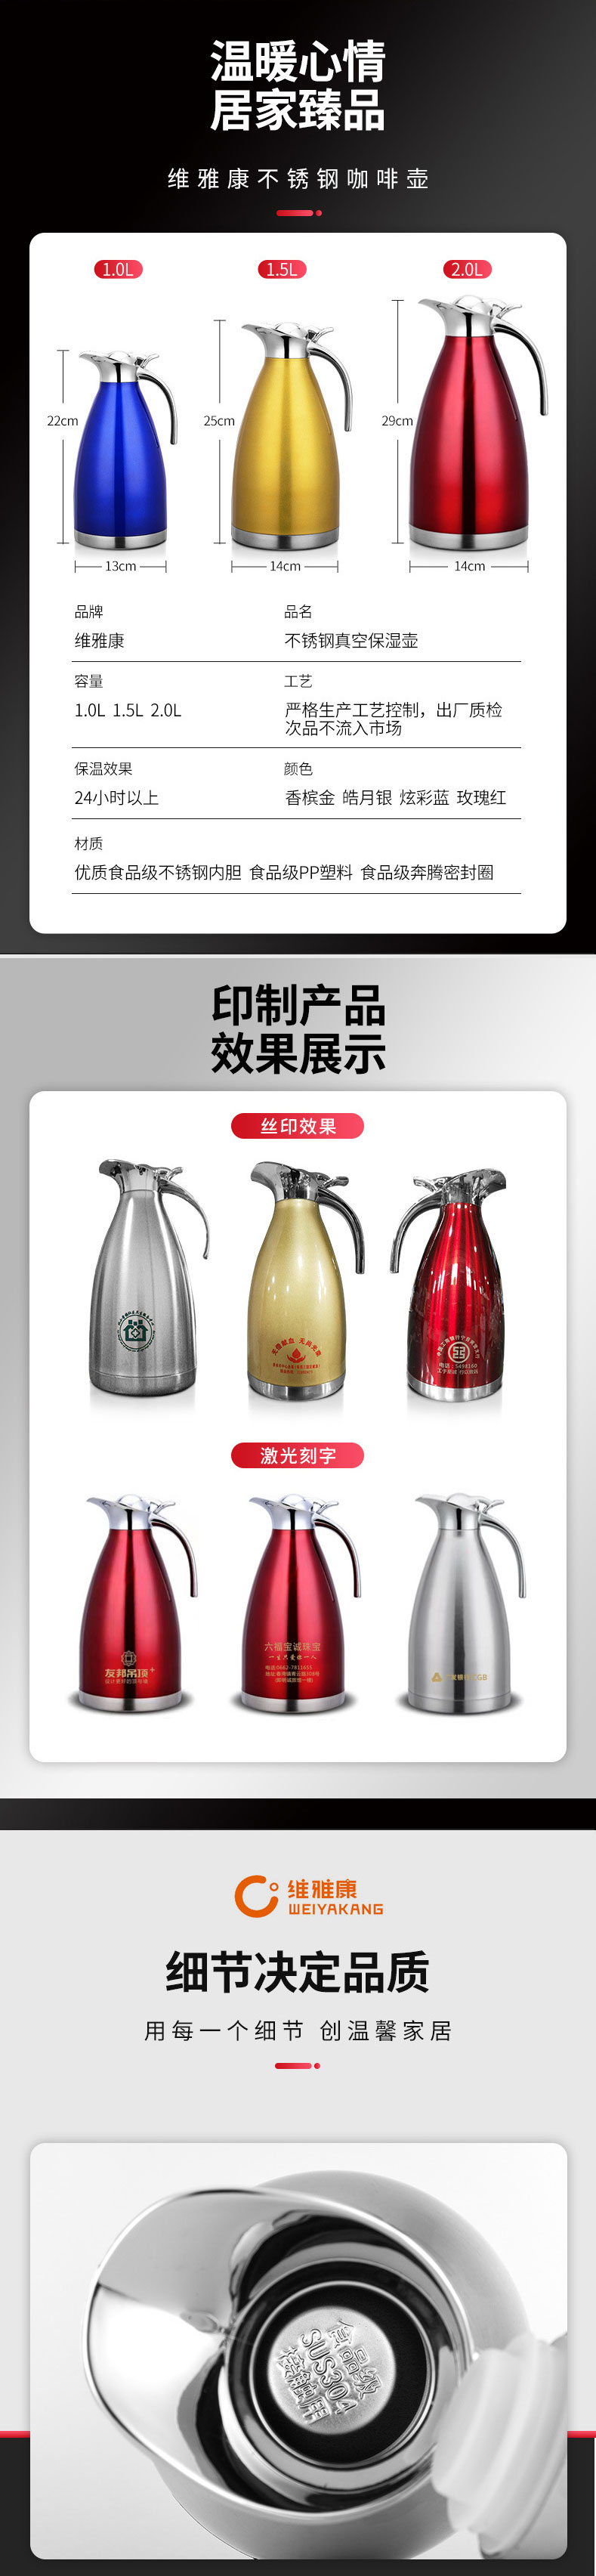 奥辉五金制品厂不锈钢保温咖啡壶详情页(图2)